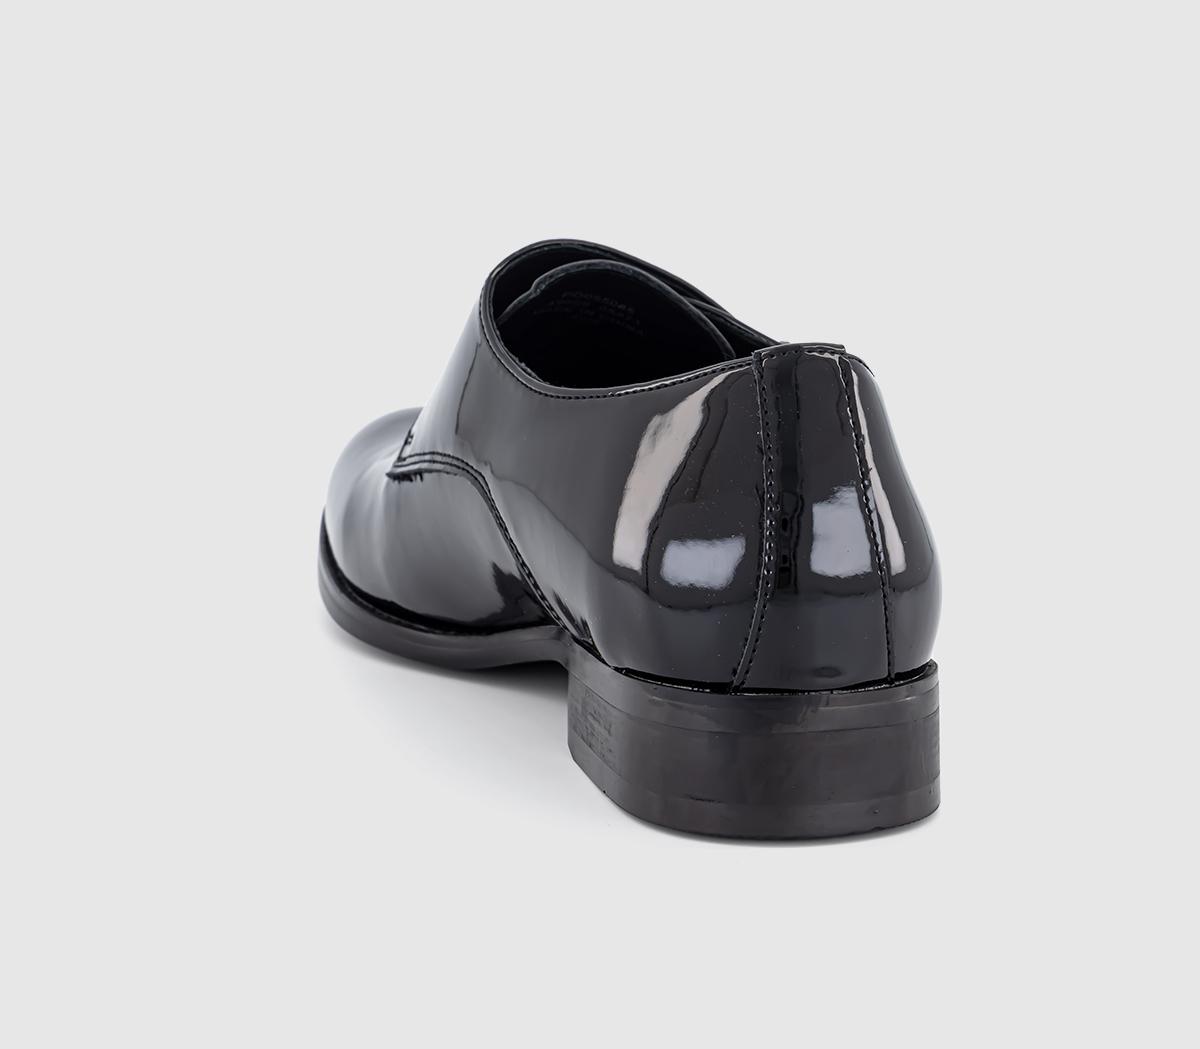 OFFICE Marty Patent Monk Black Patent - Men’s Smart Shoes